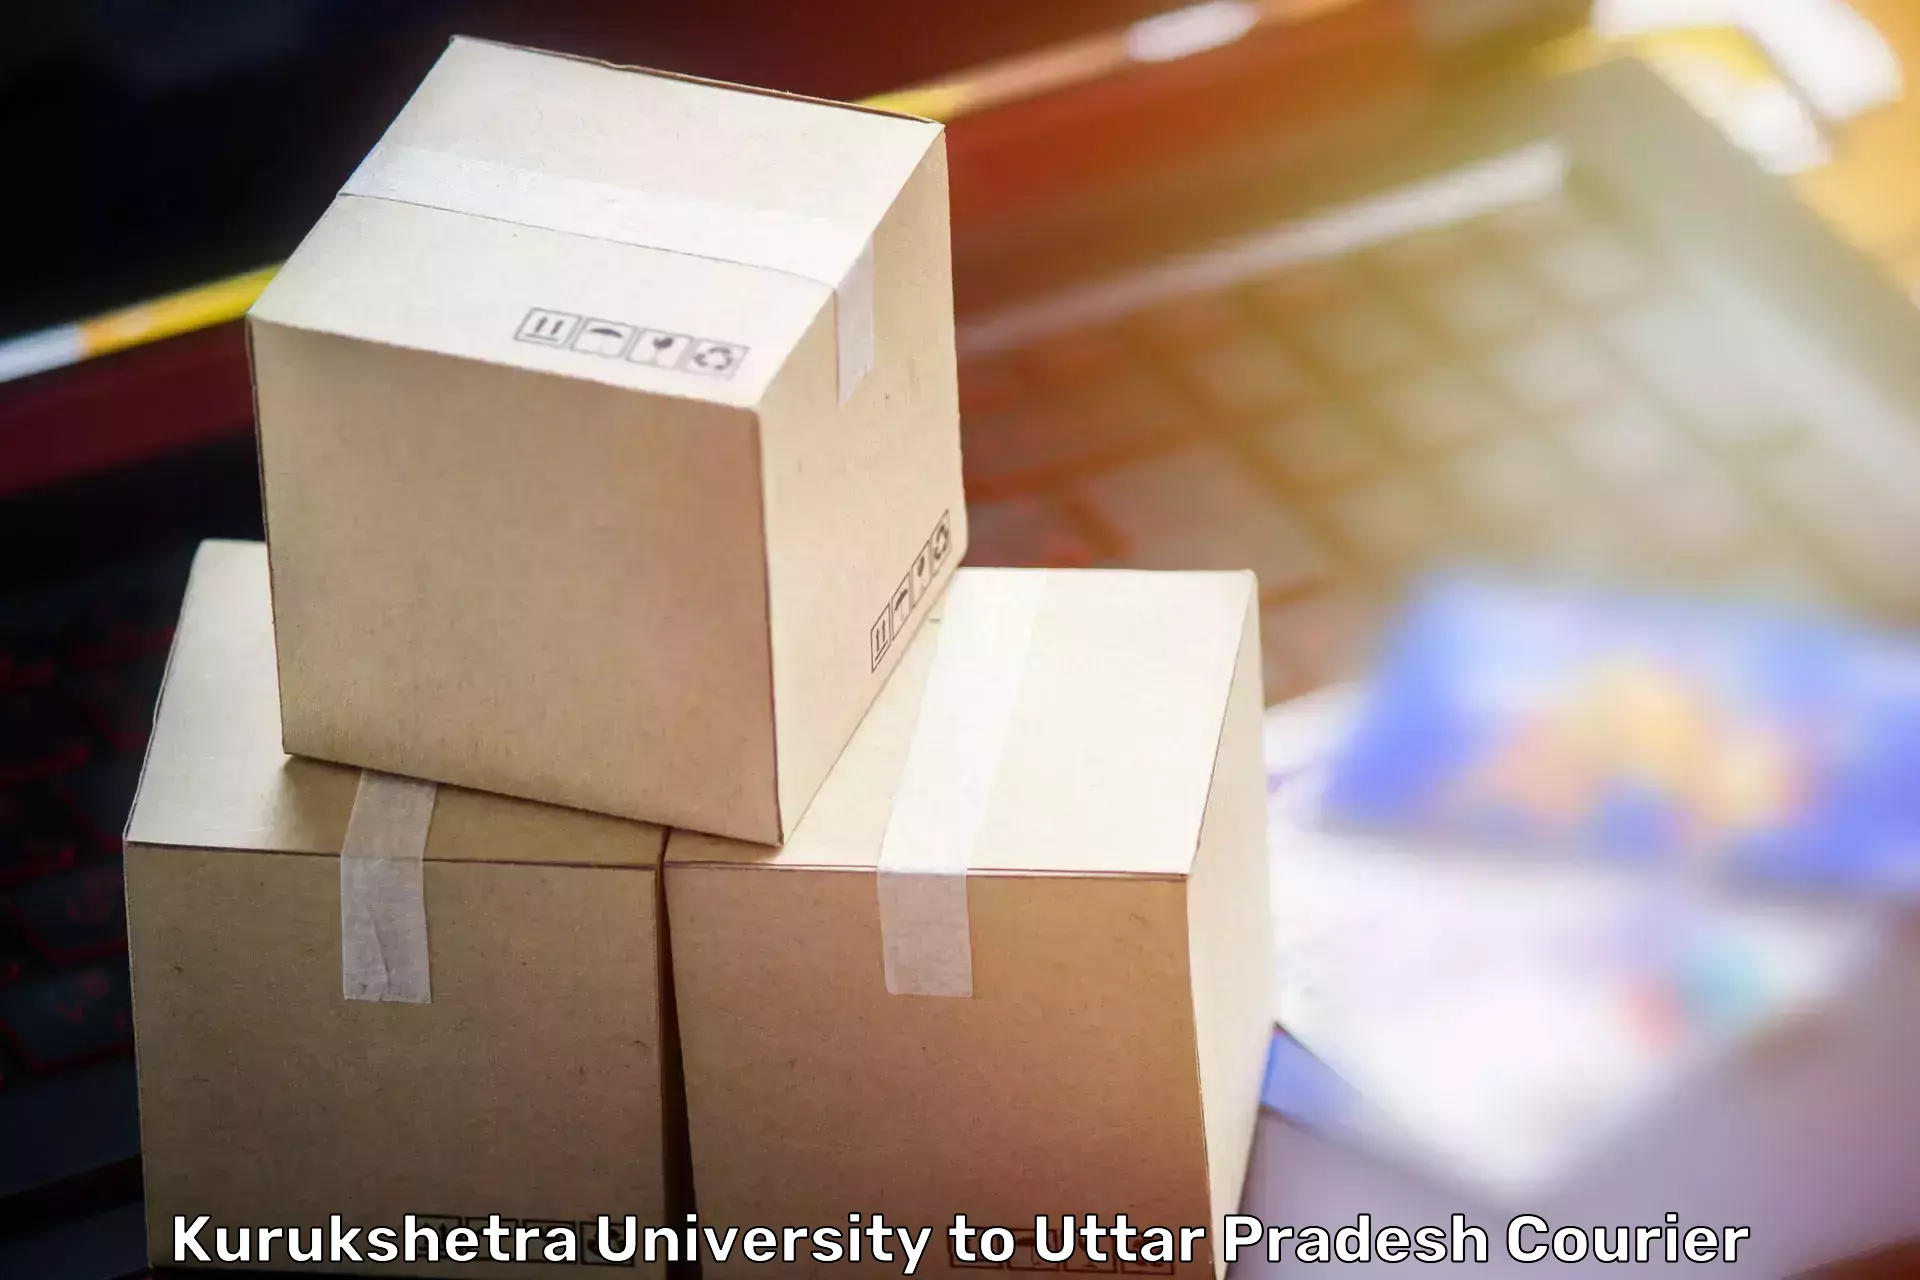 Professional home movers Kurukshetra University to IIT Varanasi